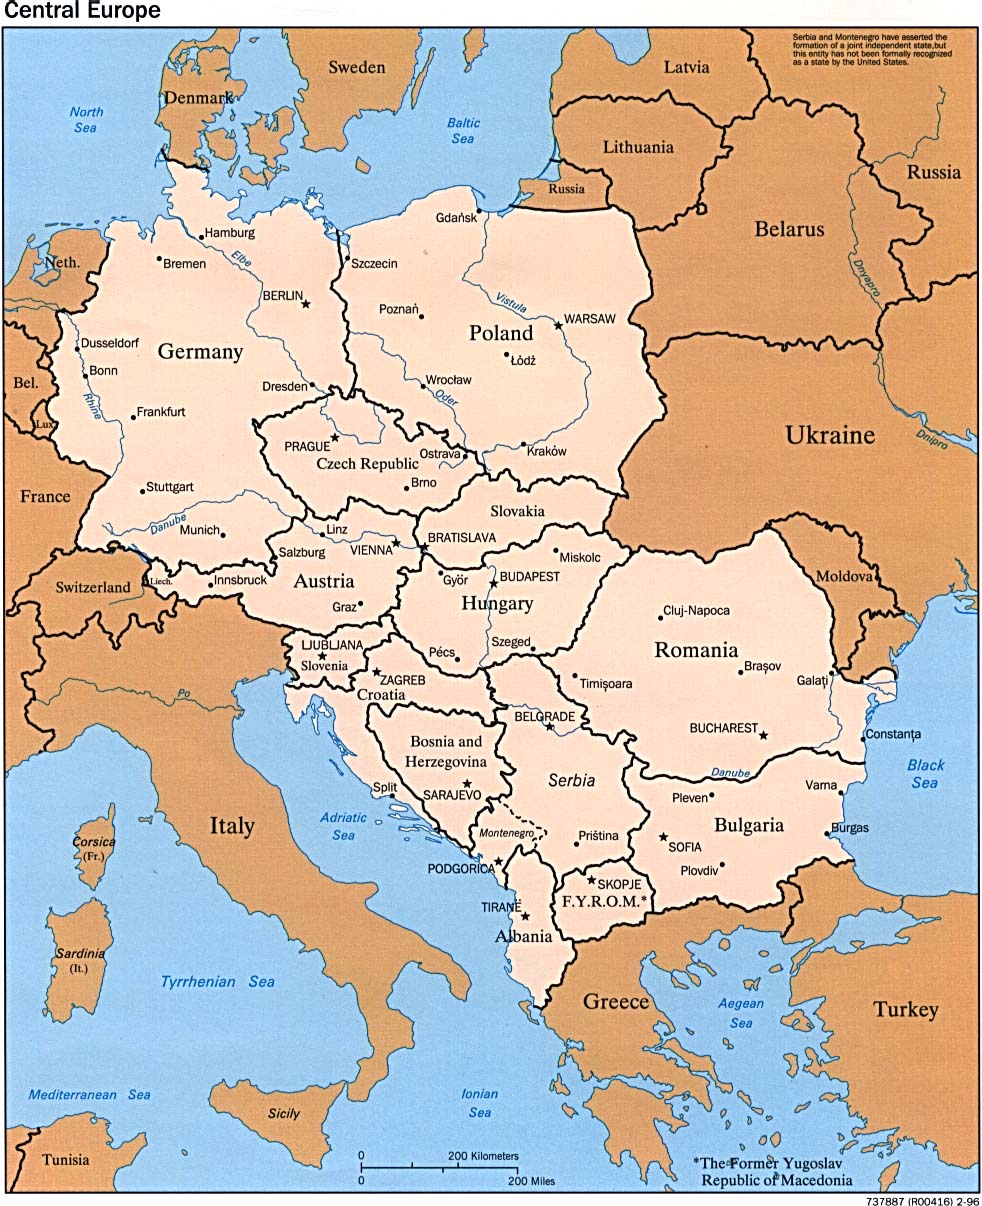 Mapa Politico de Europa Central 1996